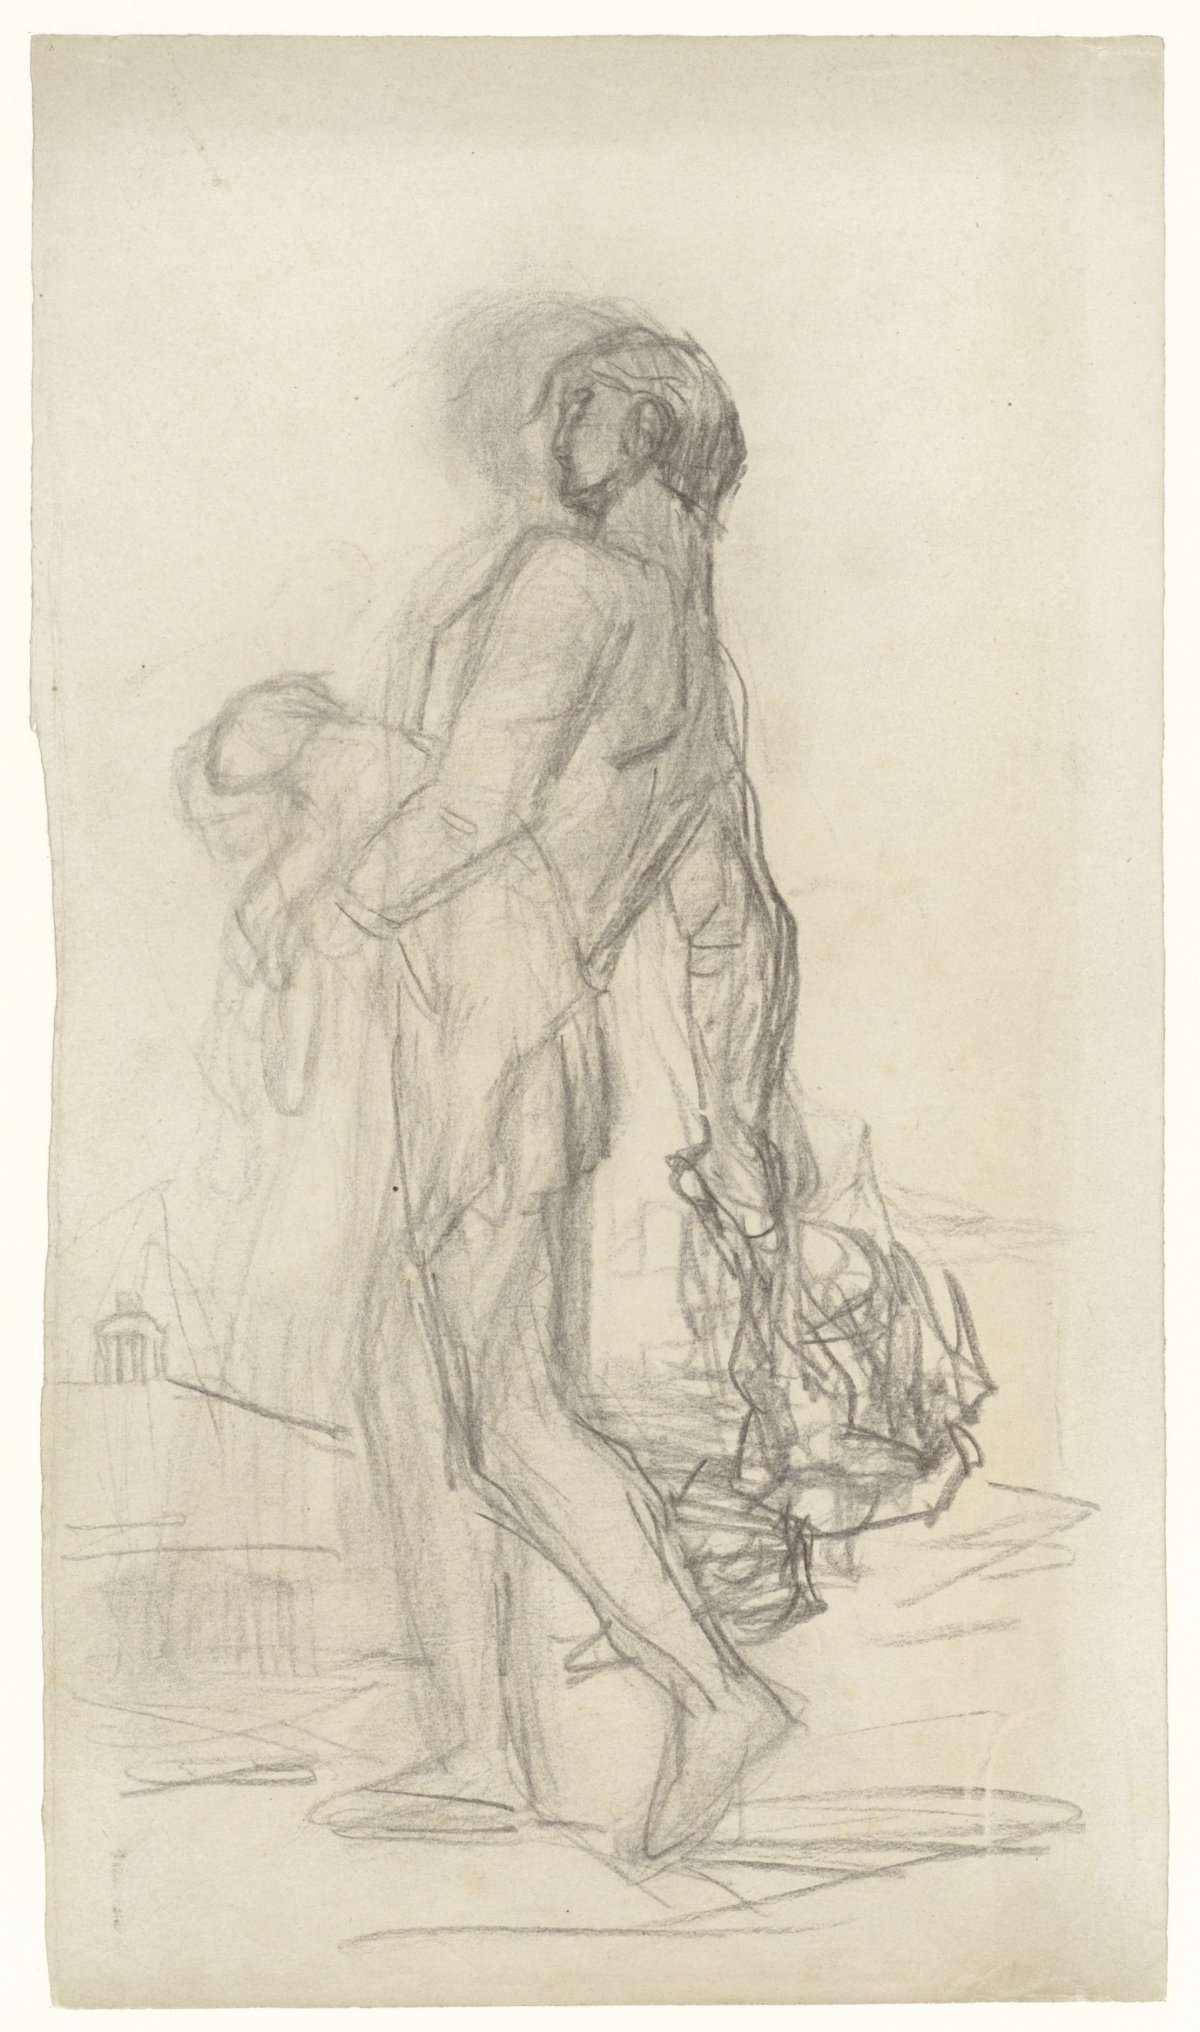 Walking man with a lamb and a bird as sacrificial animals, Matthijs Maris, 1849 - 1917